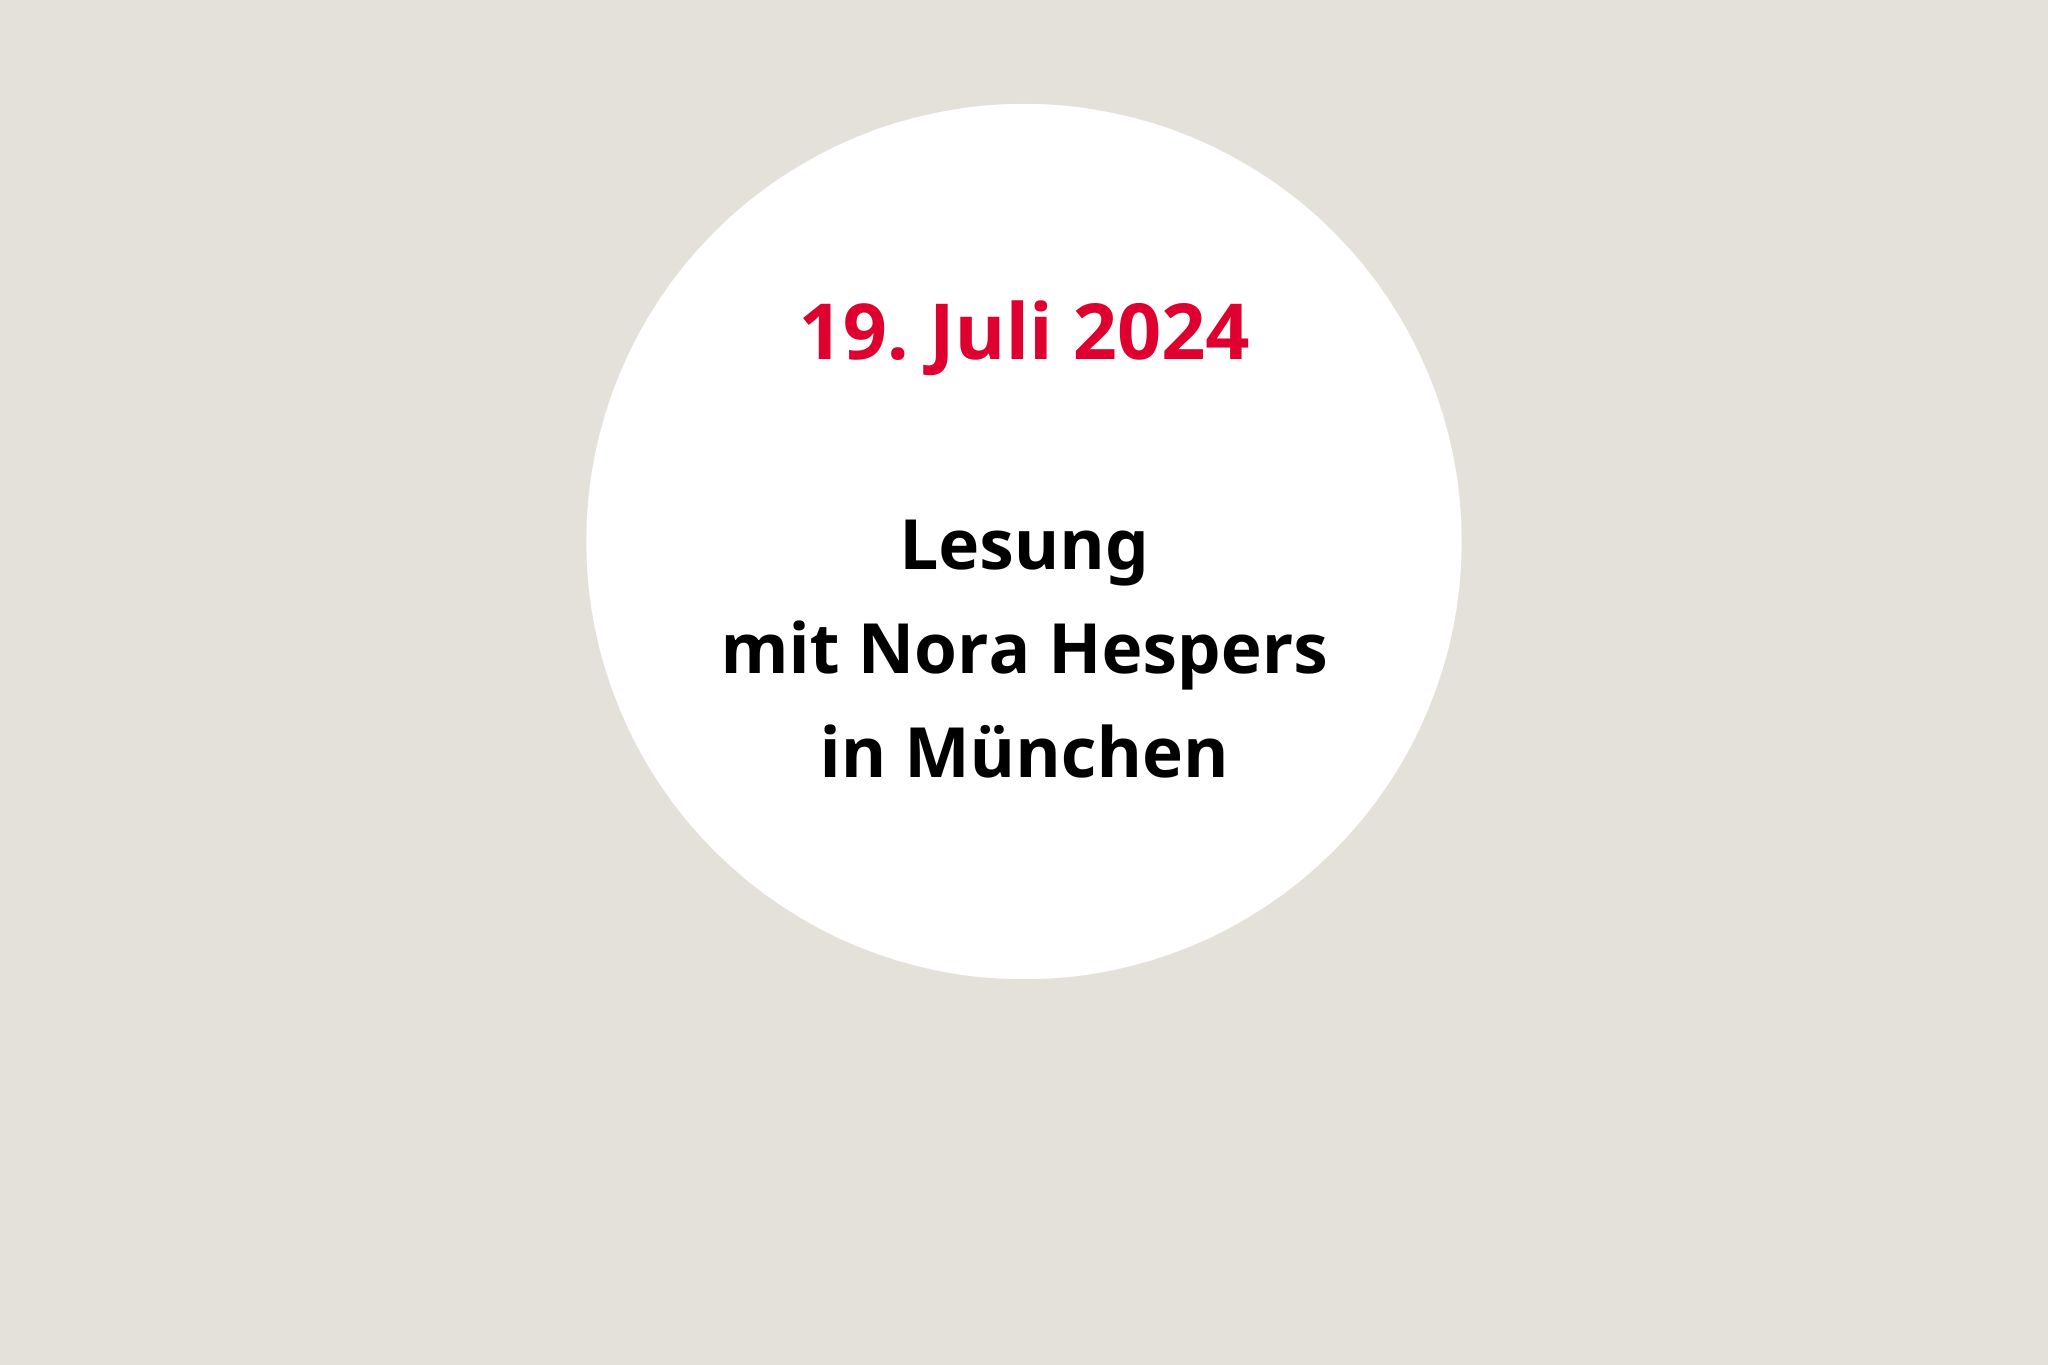 Le­sung No­ra Hespers 19. Ju­li 2024